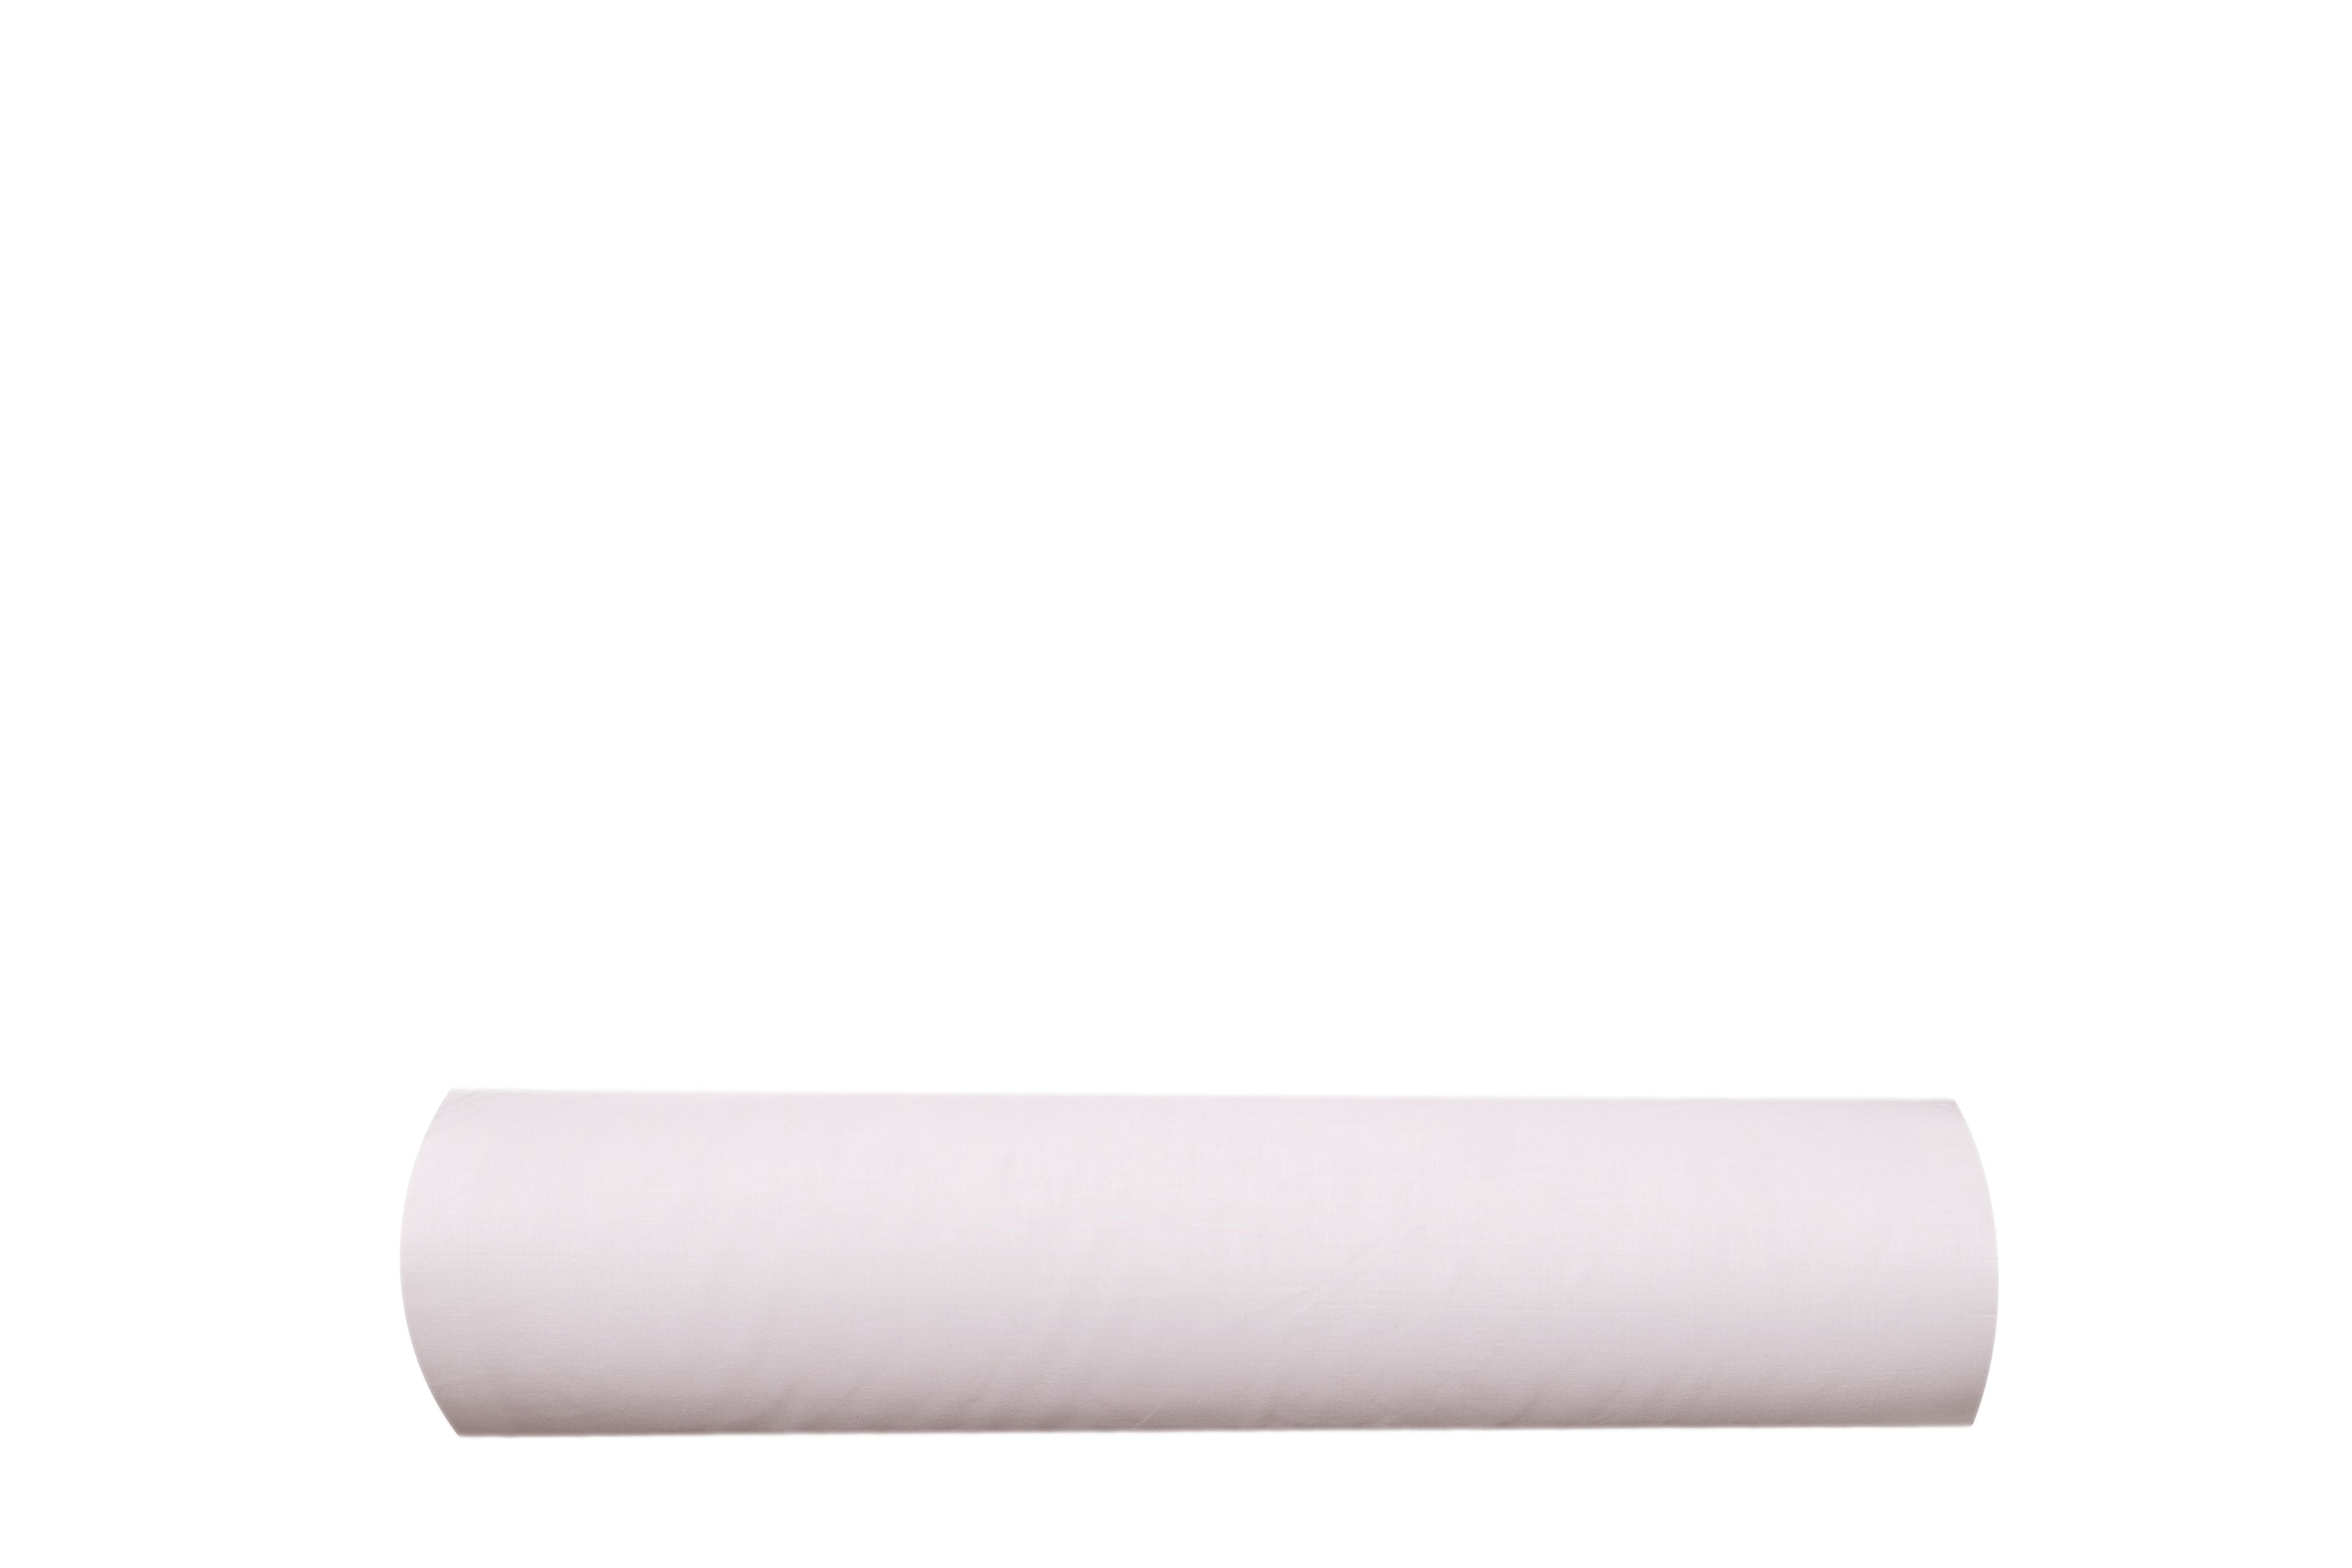 Completo lenzuoline lenzuola stampa fantasia 100% cotone made in italy per culla compatibile cosleeping lettino bimbo bimba bimbi neonato ROBIN - SmartDecoHome